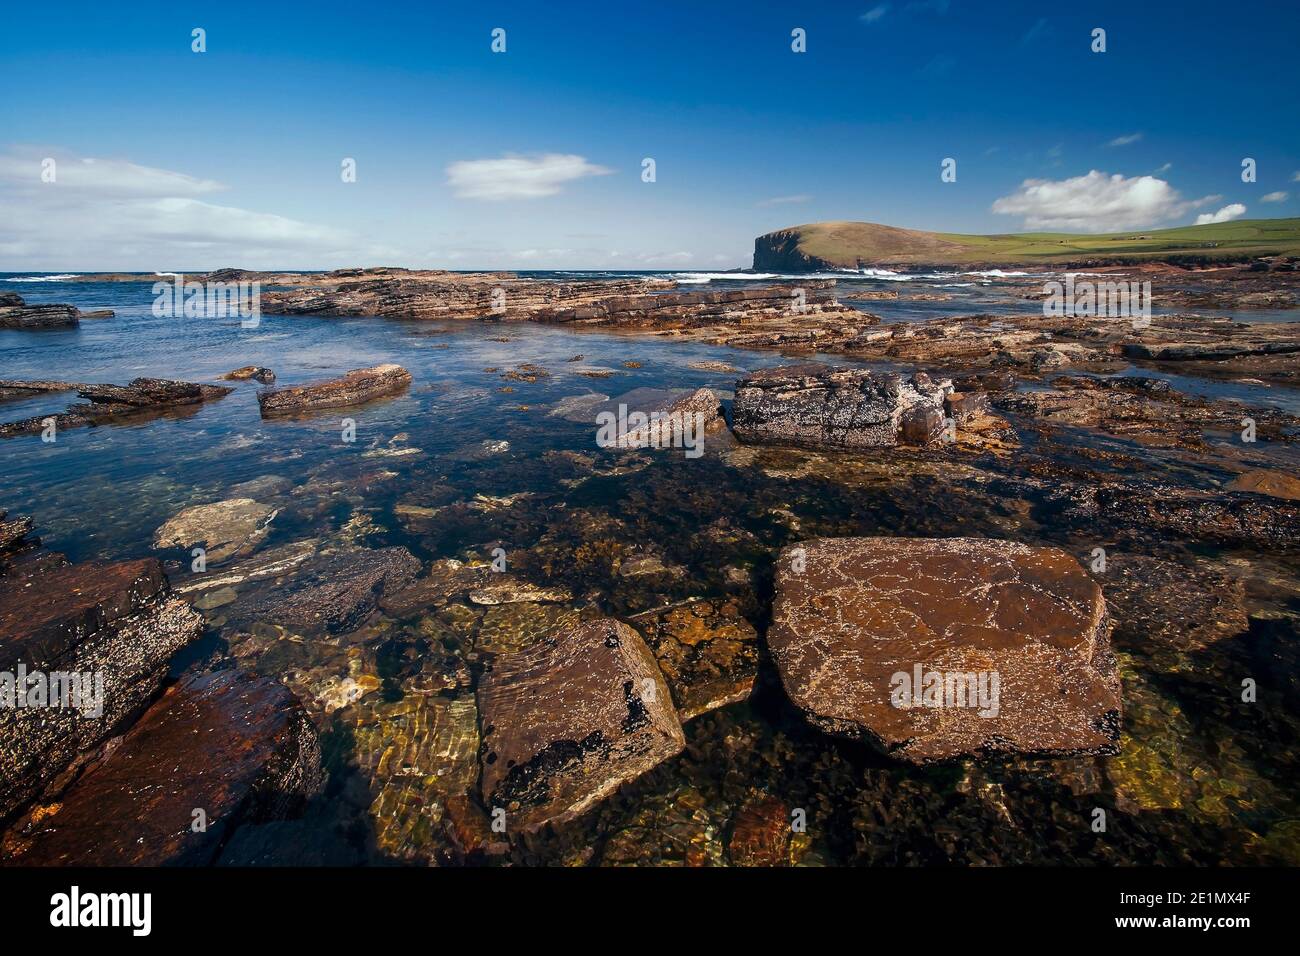 Eaux cristallines de l'océan Atlantique près de la rive ouest de Îles Orkney dans le nord de l'Écosse Banque D'Images